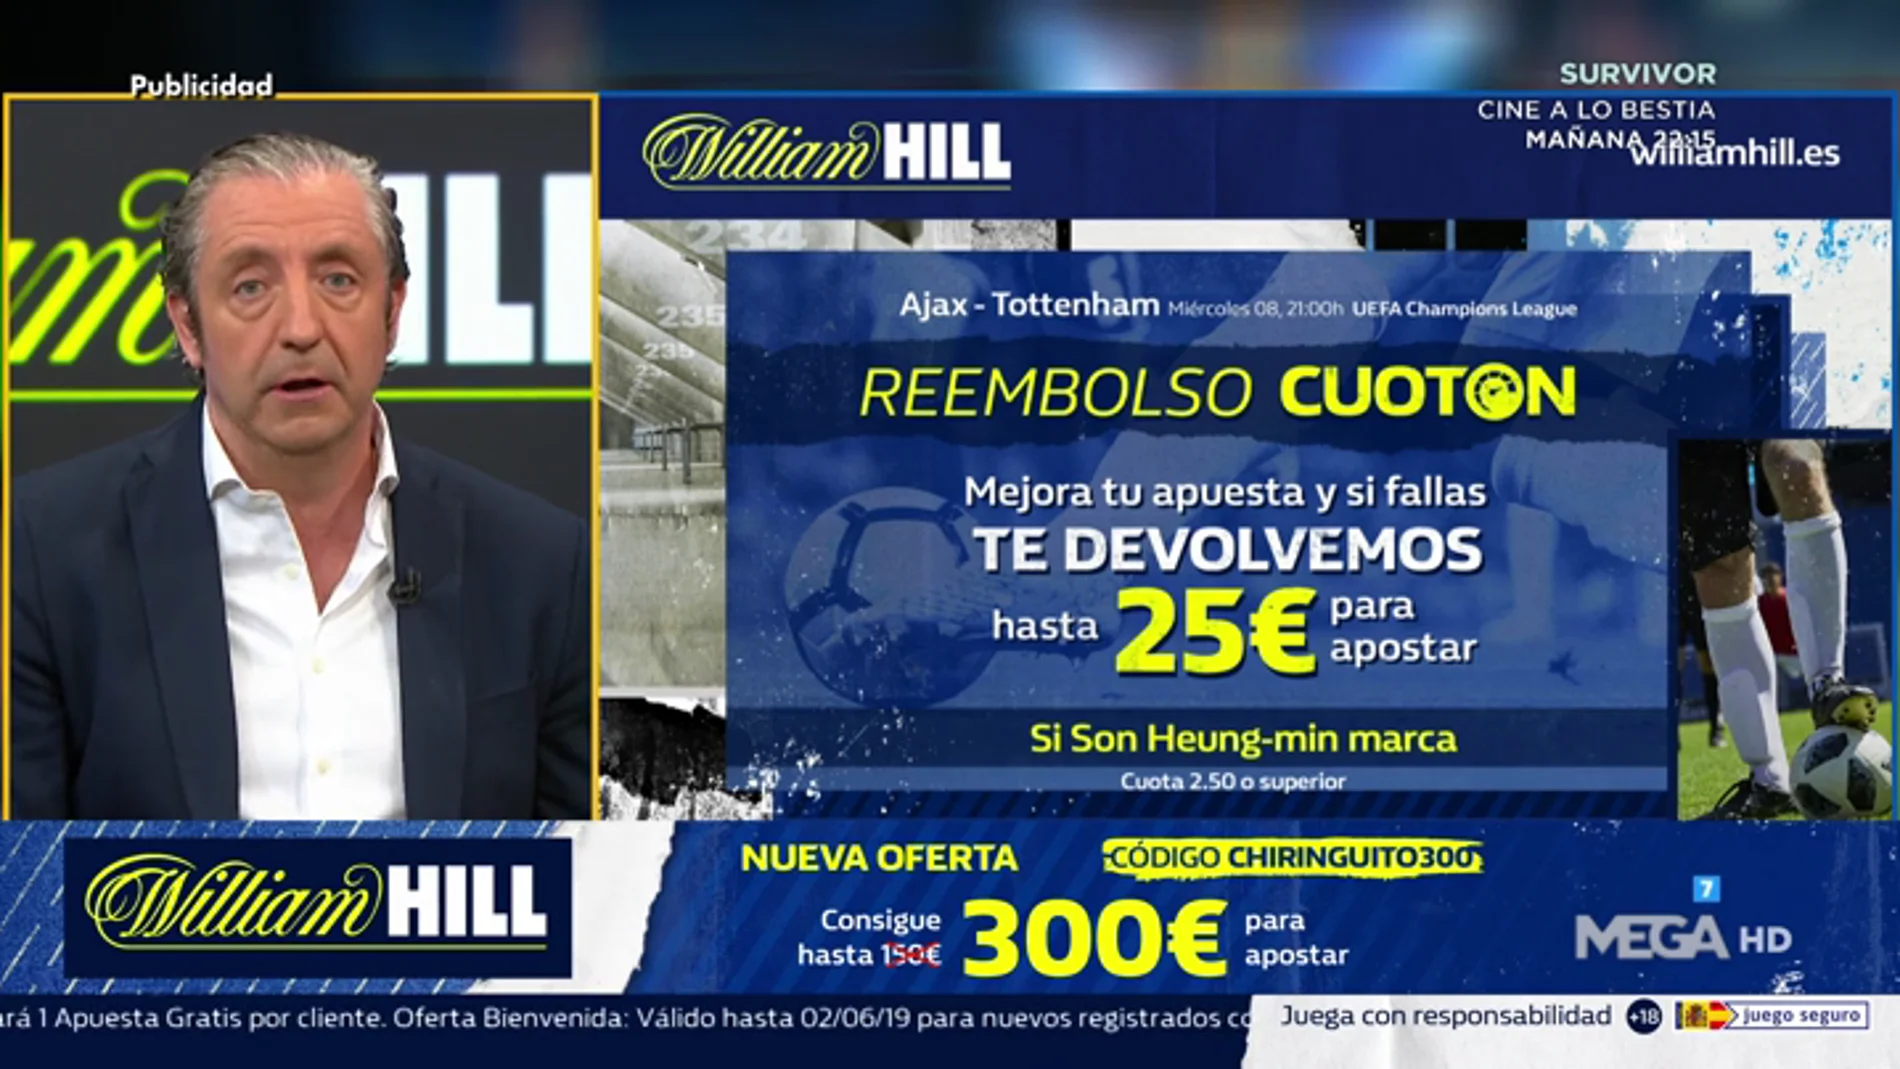  Josep te trae la mejor oferta de registro para que apuestes con William Hill 